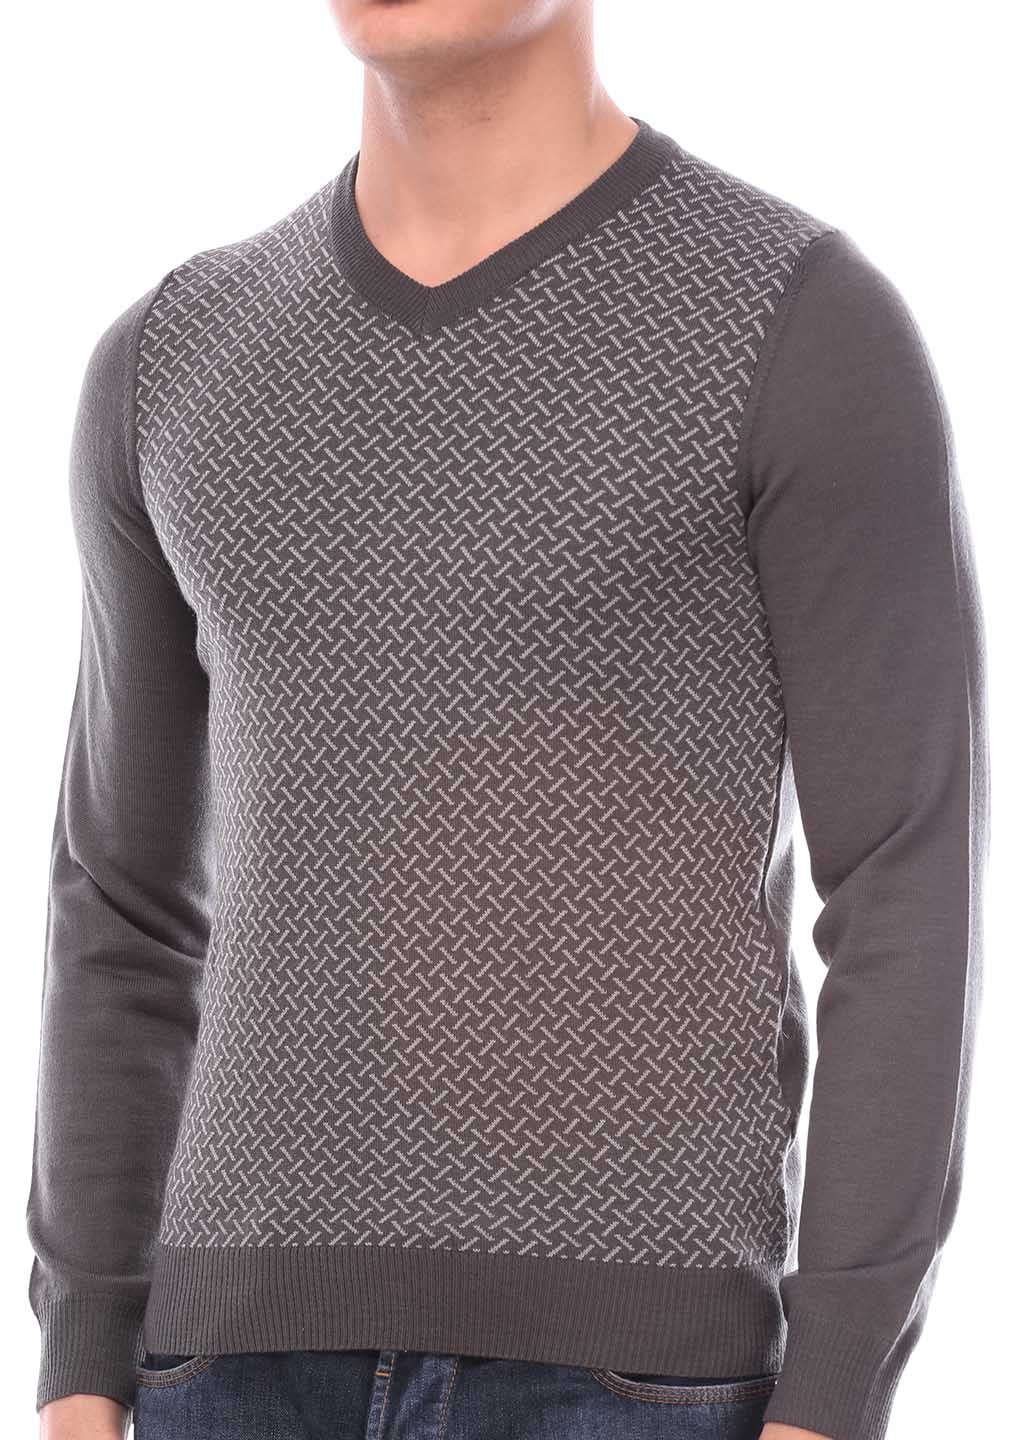 Темно-серый демисезонный пуловер пуловер Flash